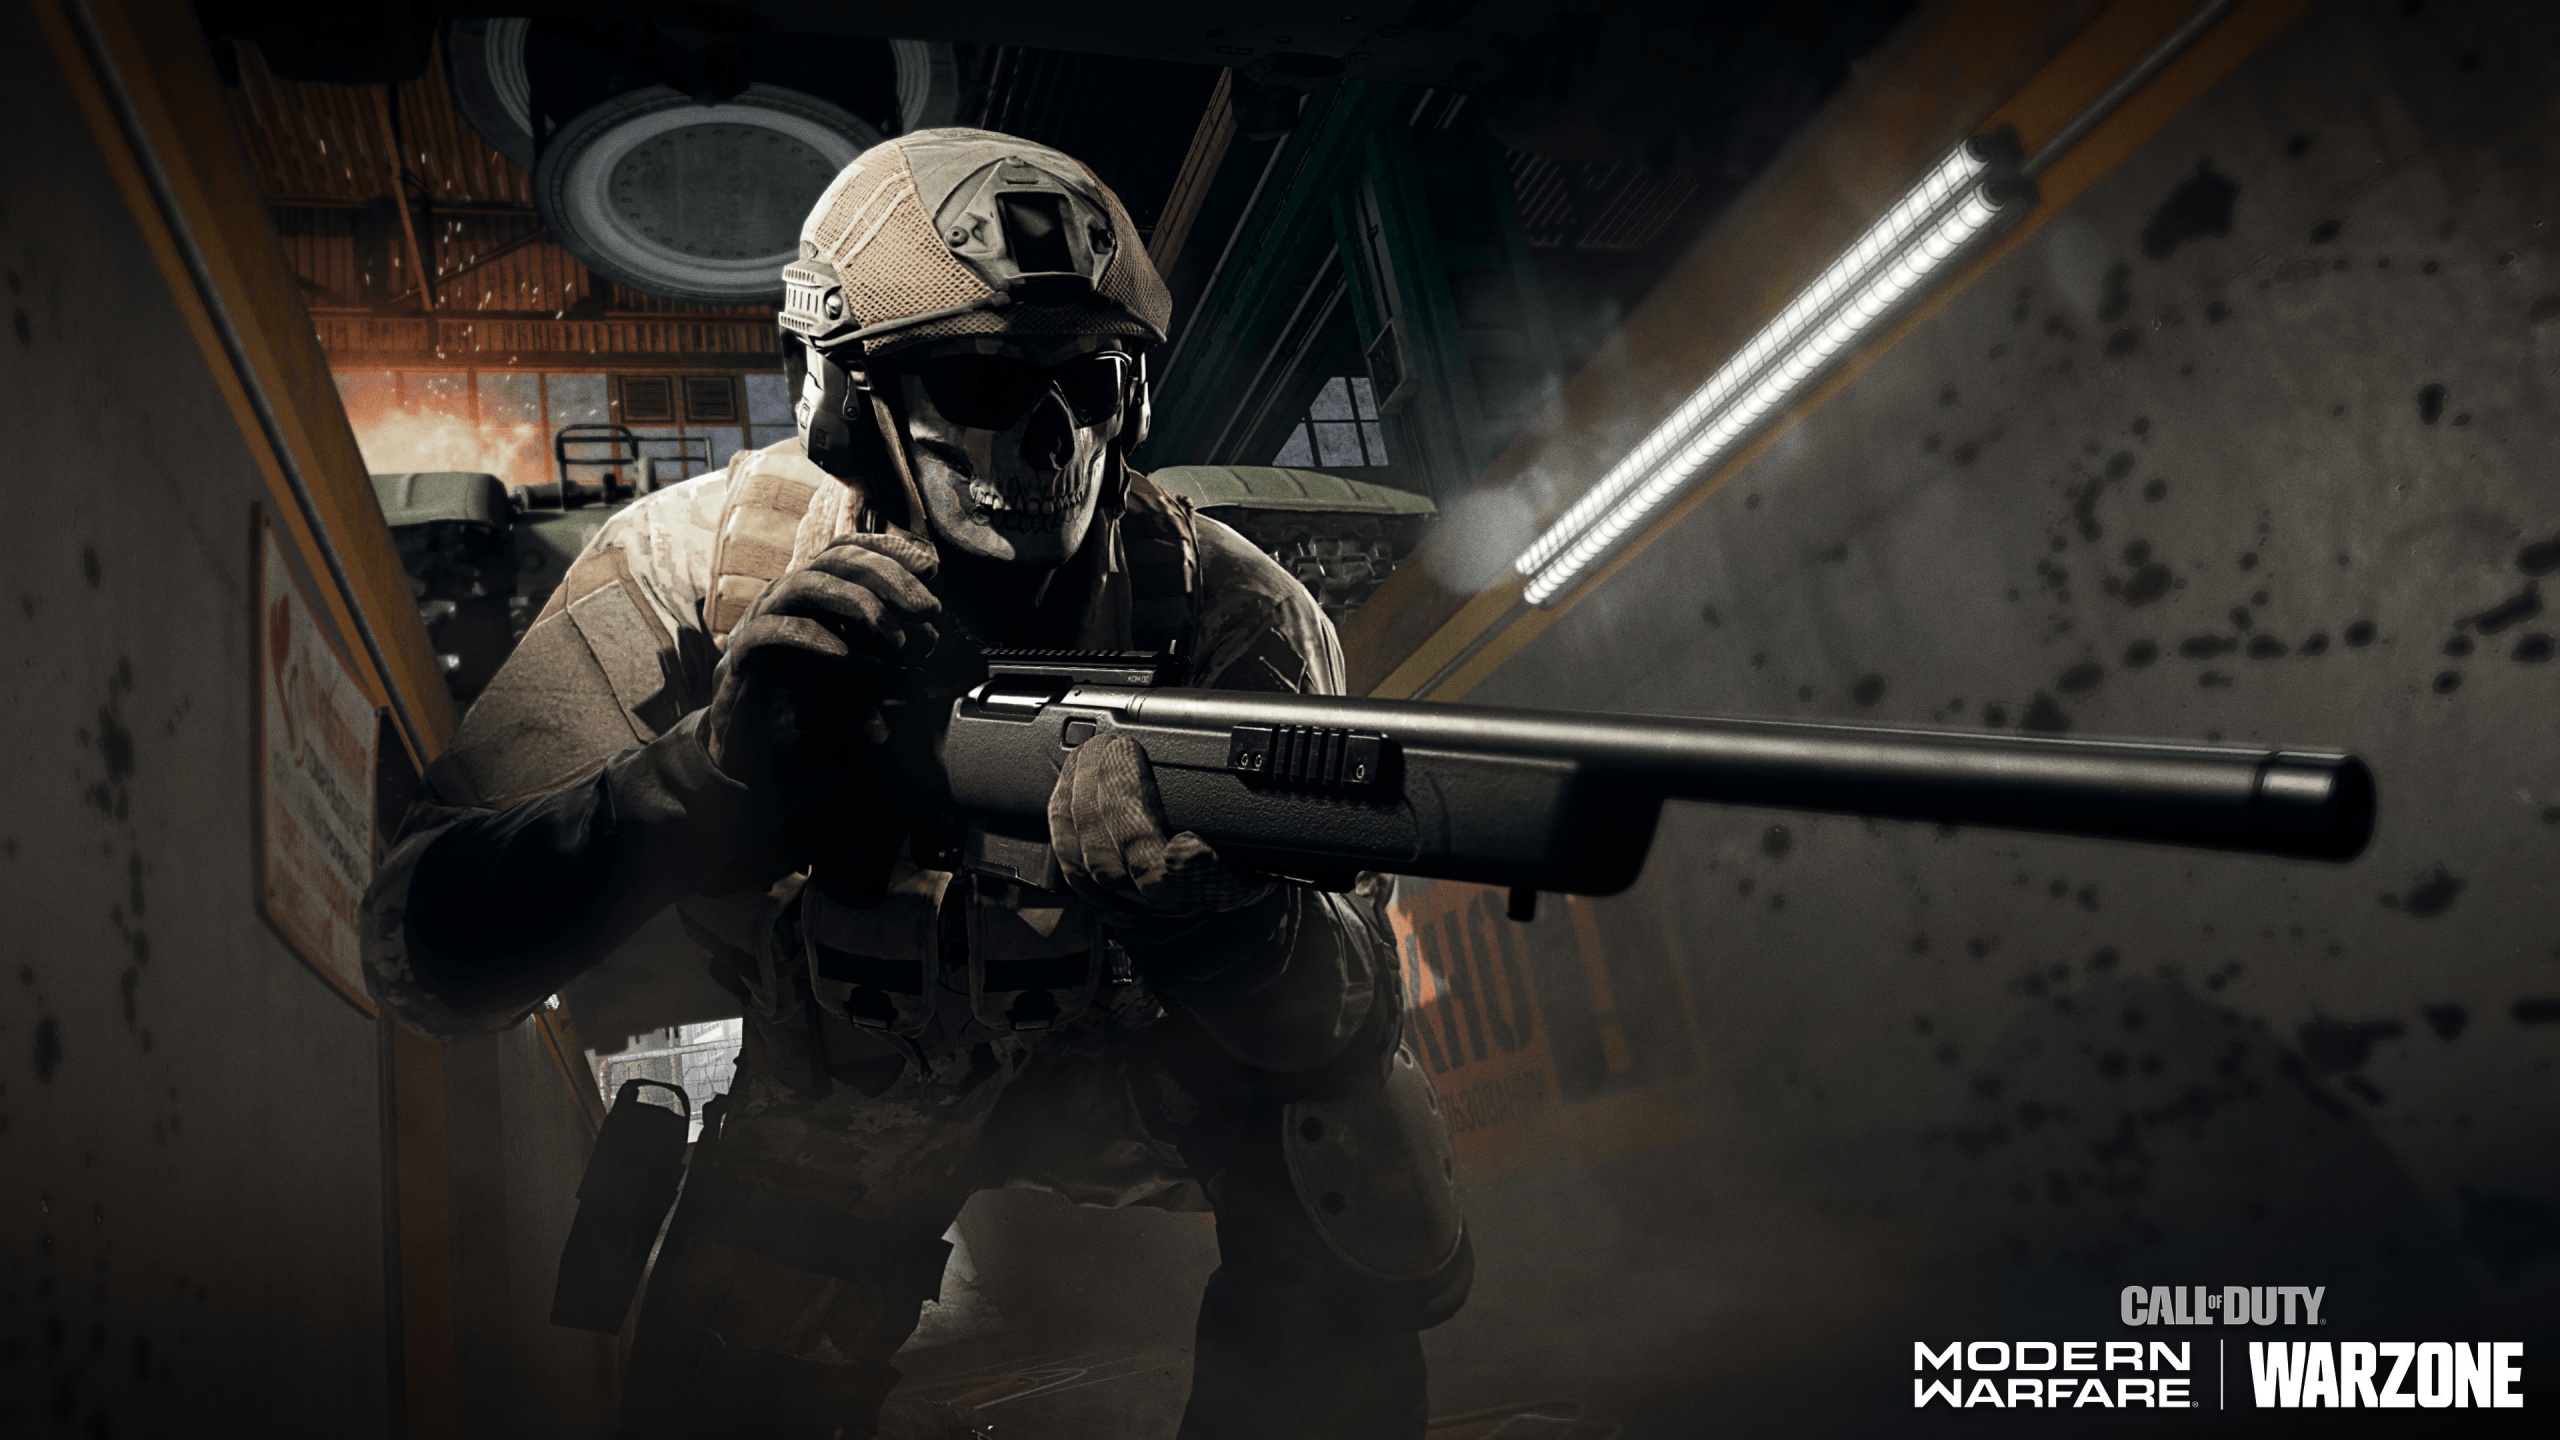 Duty: Modern Warfare Wallpaper 4K